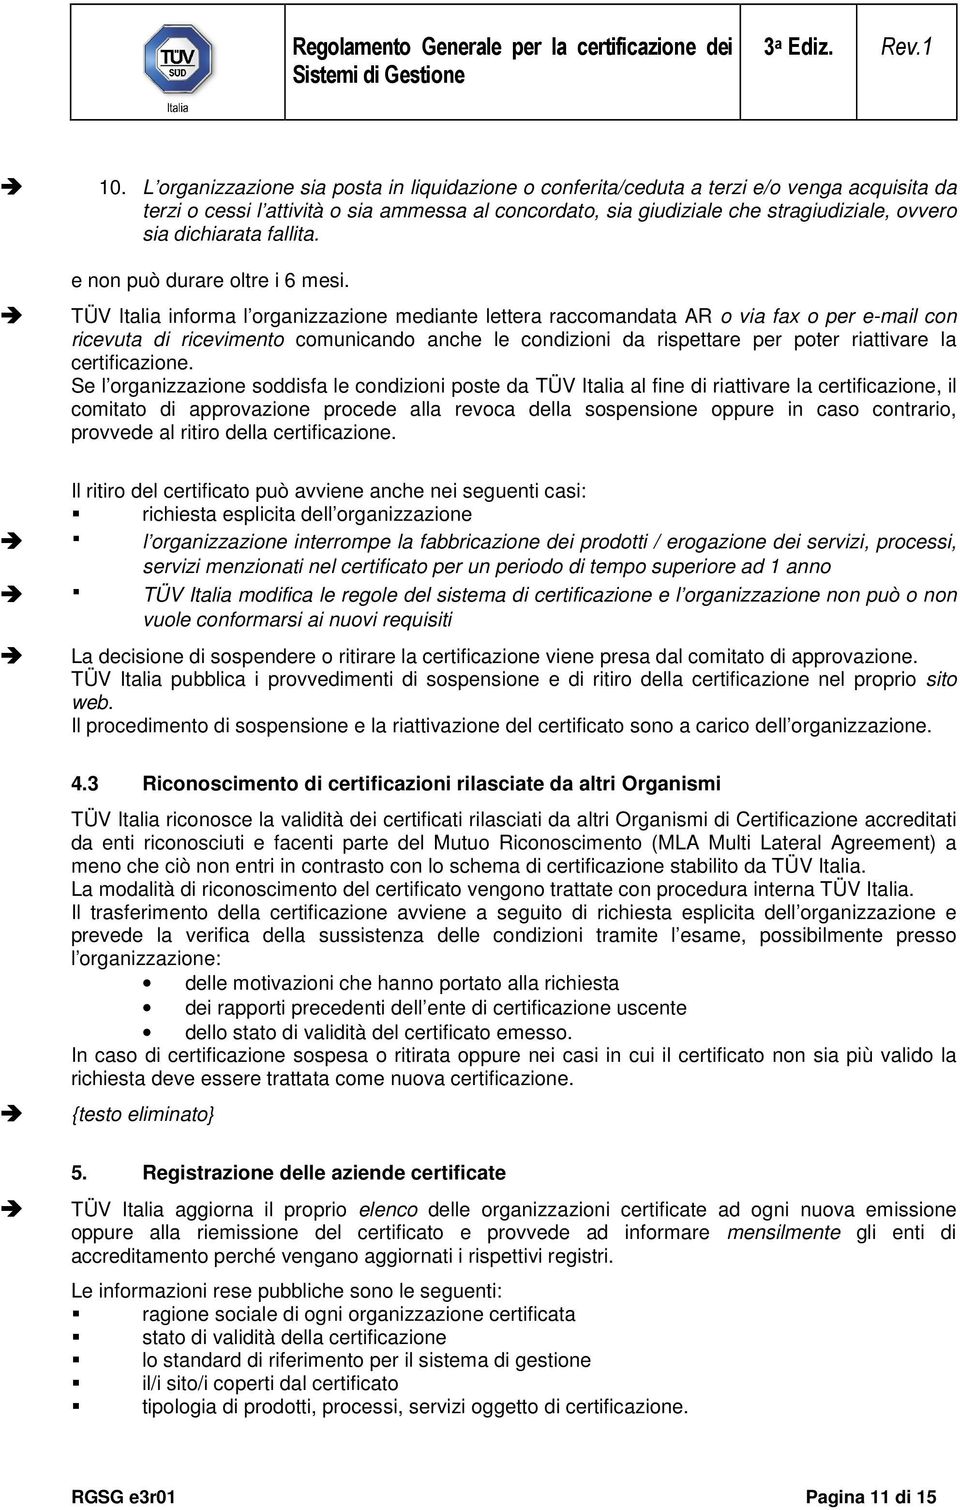 TÜV Italia informa l organizzazione mediante lettera raccomandata AR o via fax o per e-mail con ricevuta di ricevimento comunicando anche le condizioni da rispettare per poter riattivare la